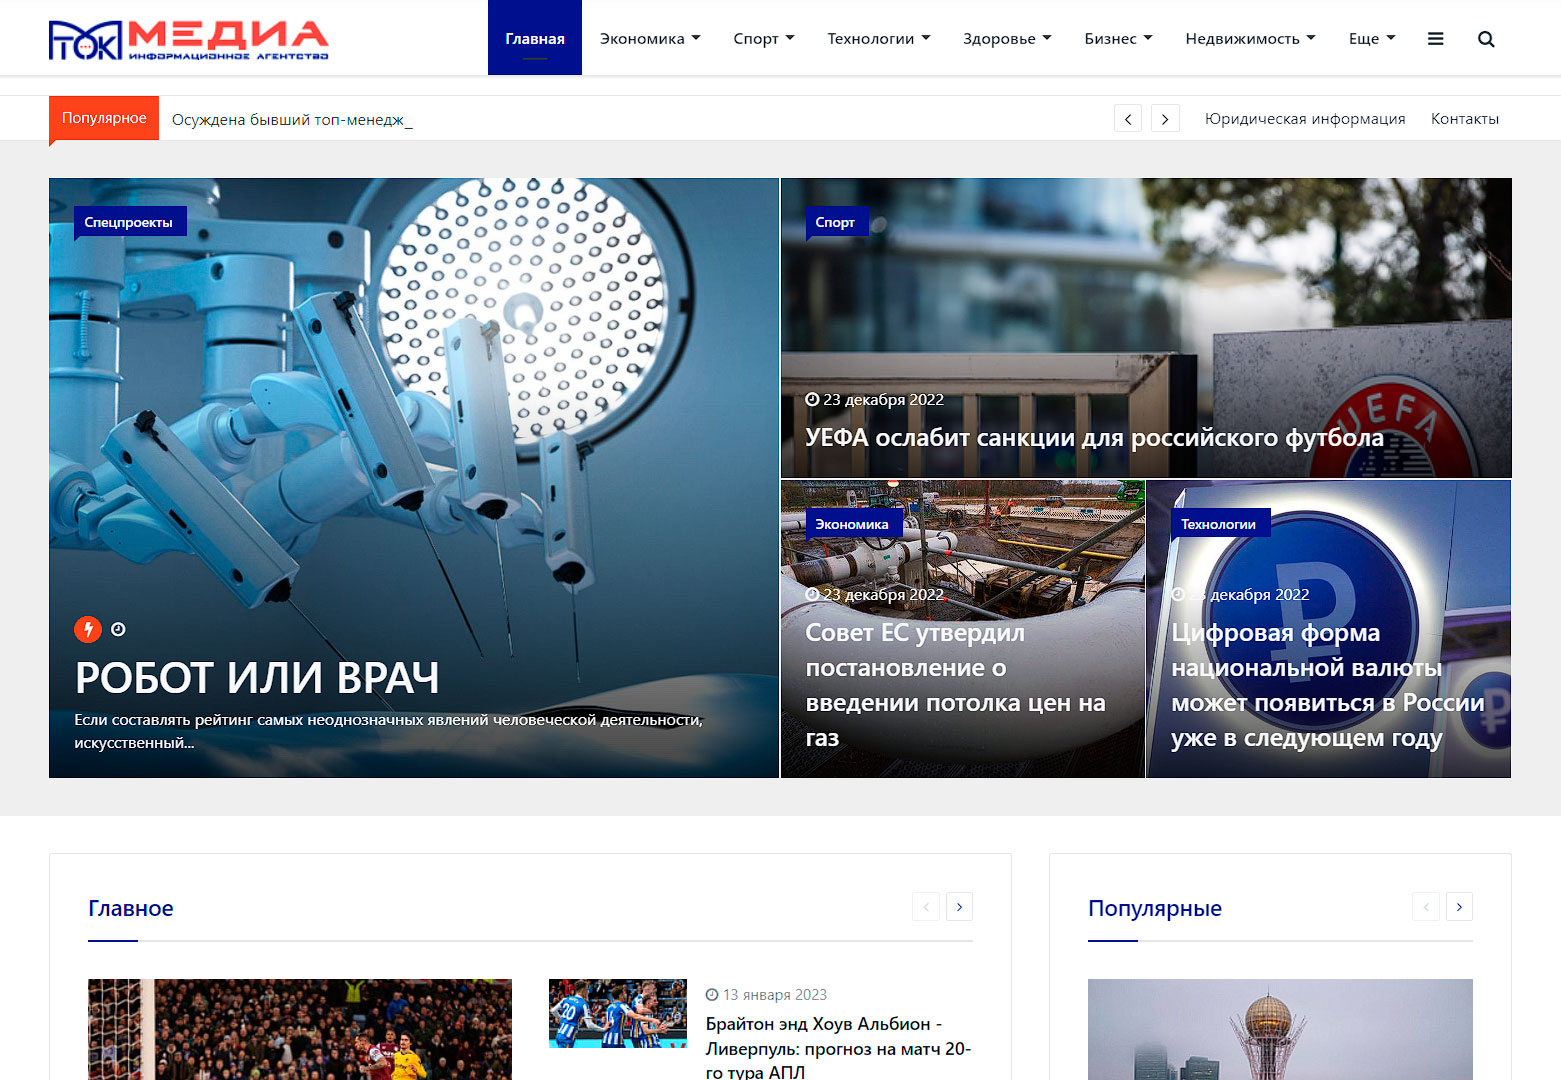 Новый информационный портал заработал в России